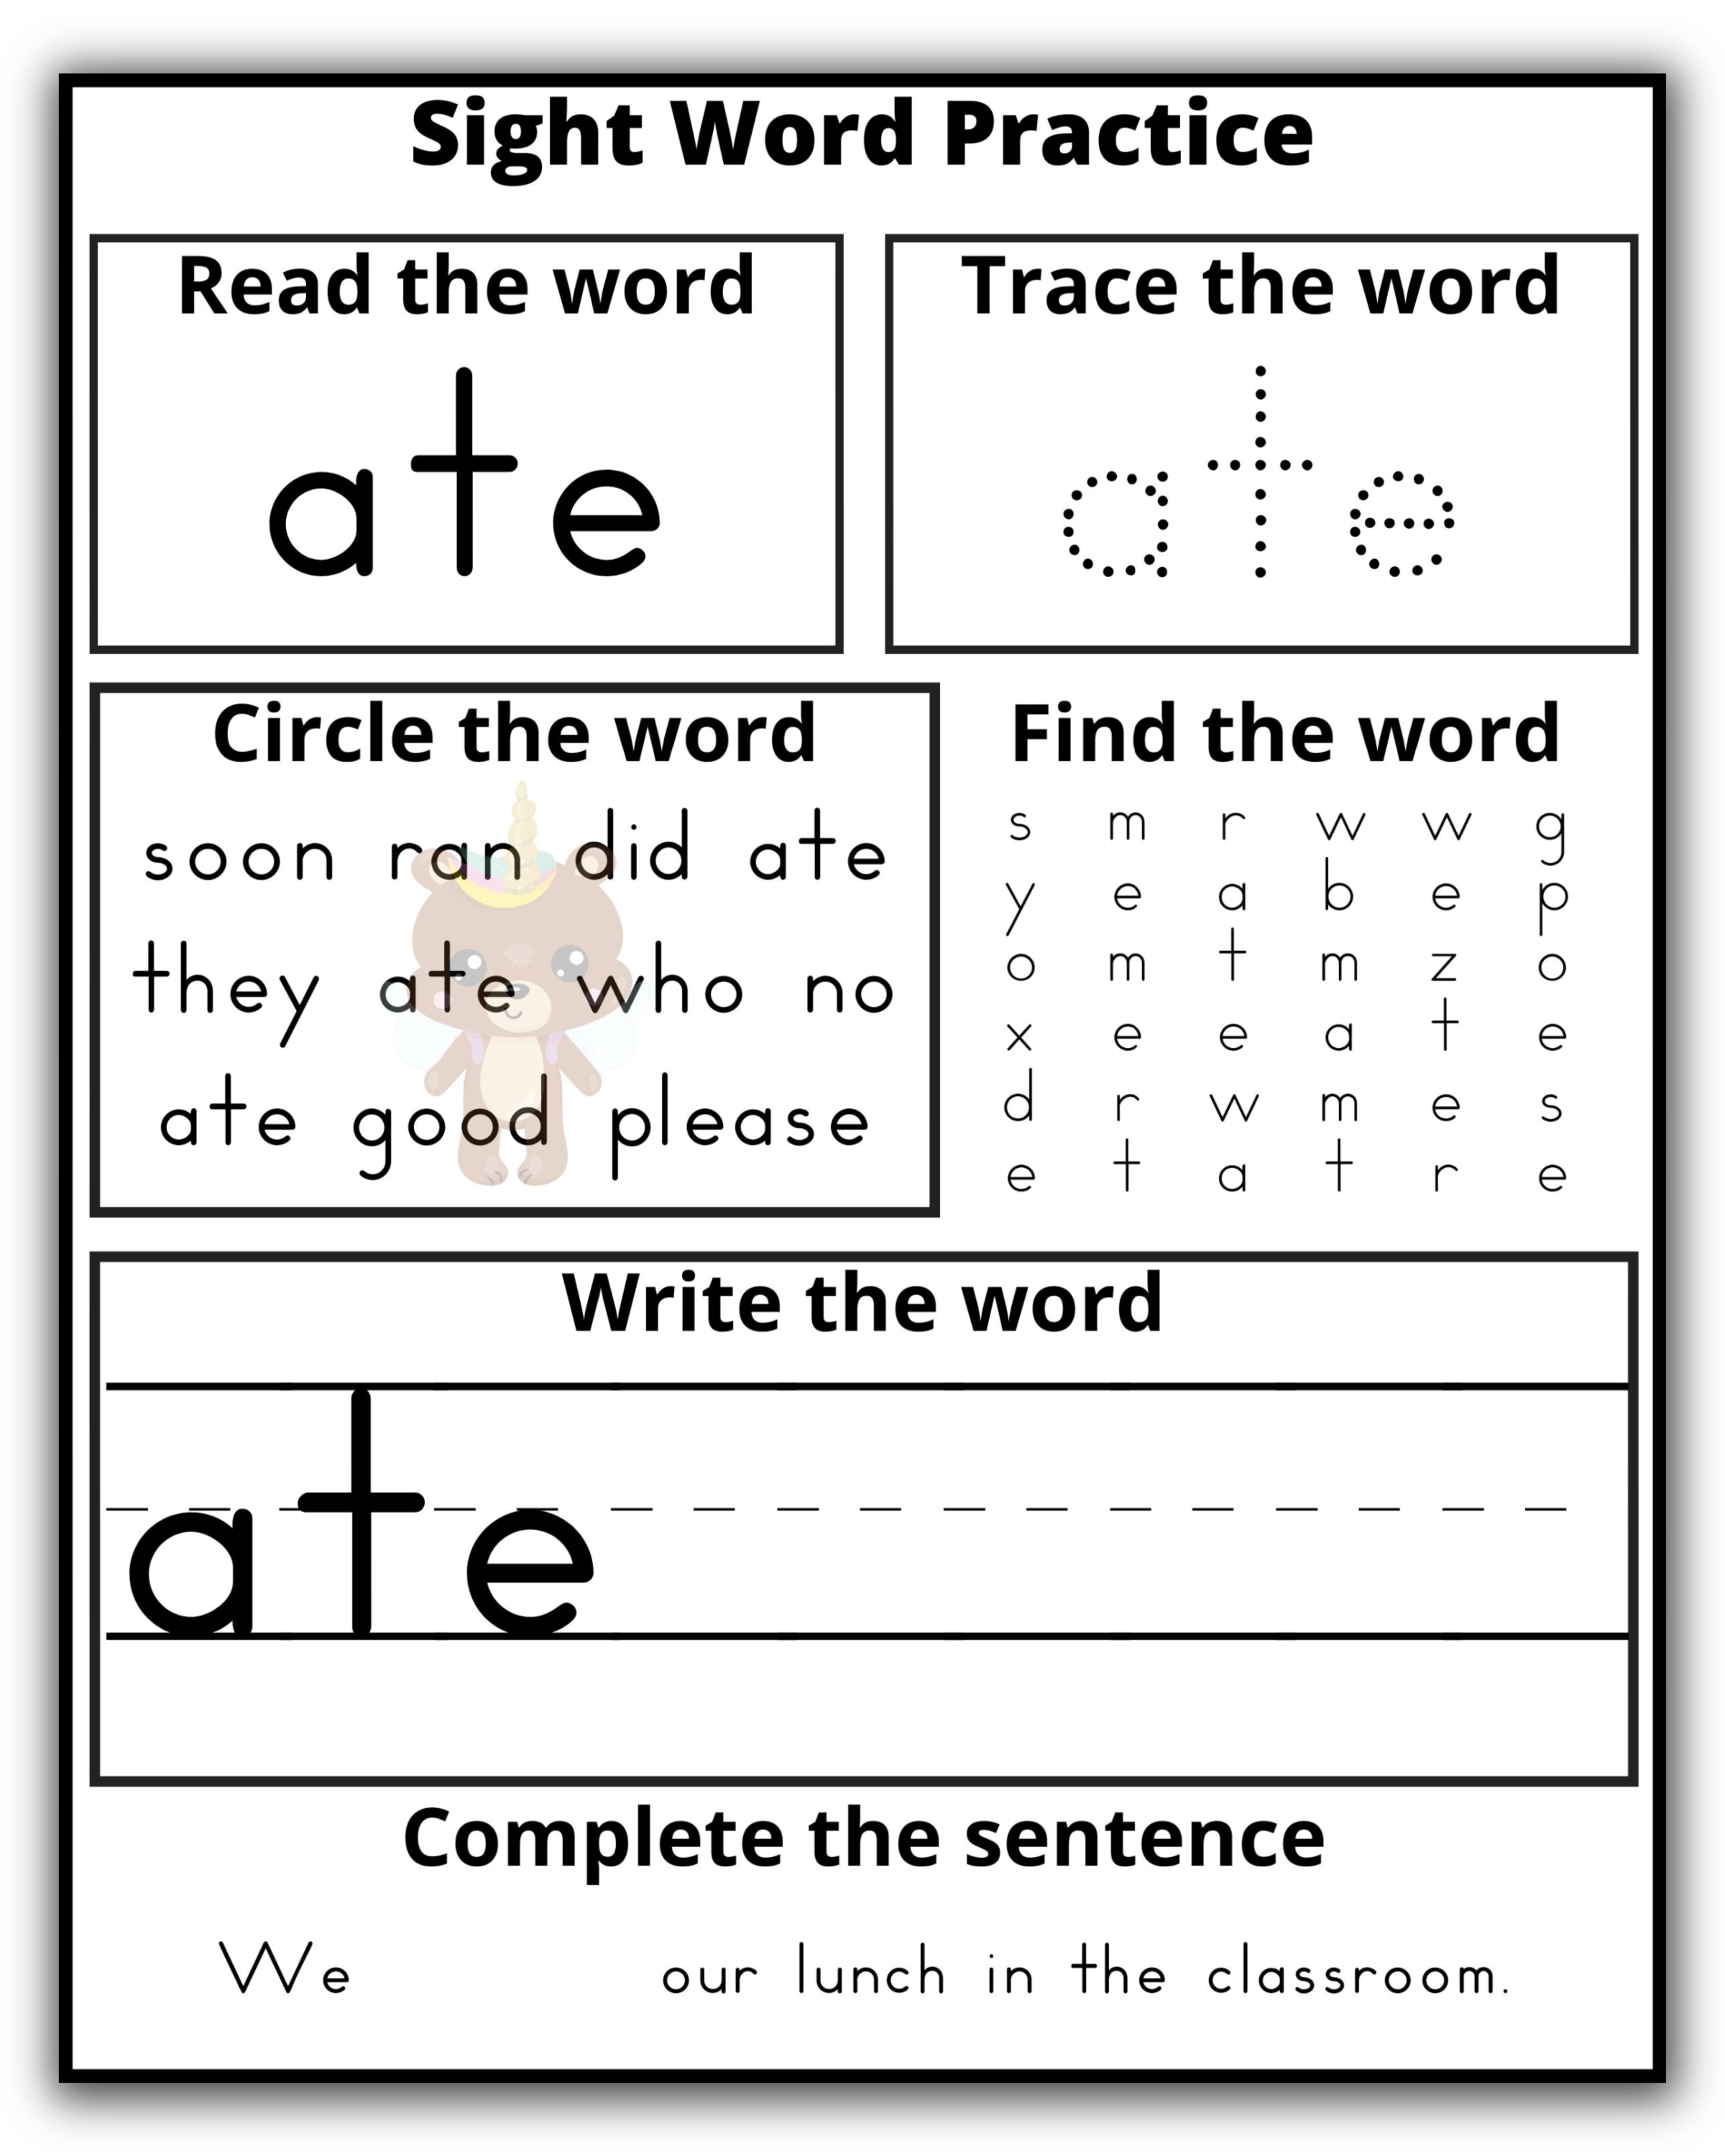 Kindergarten Sight Word Practice